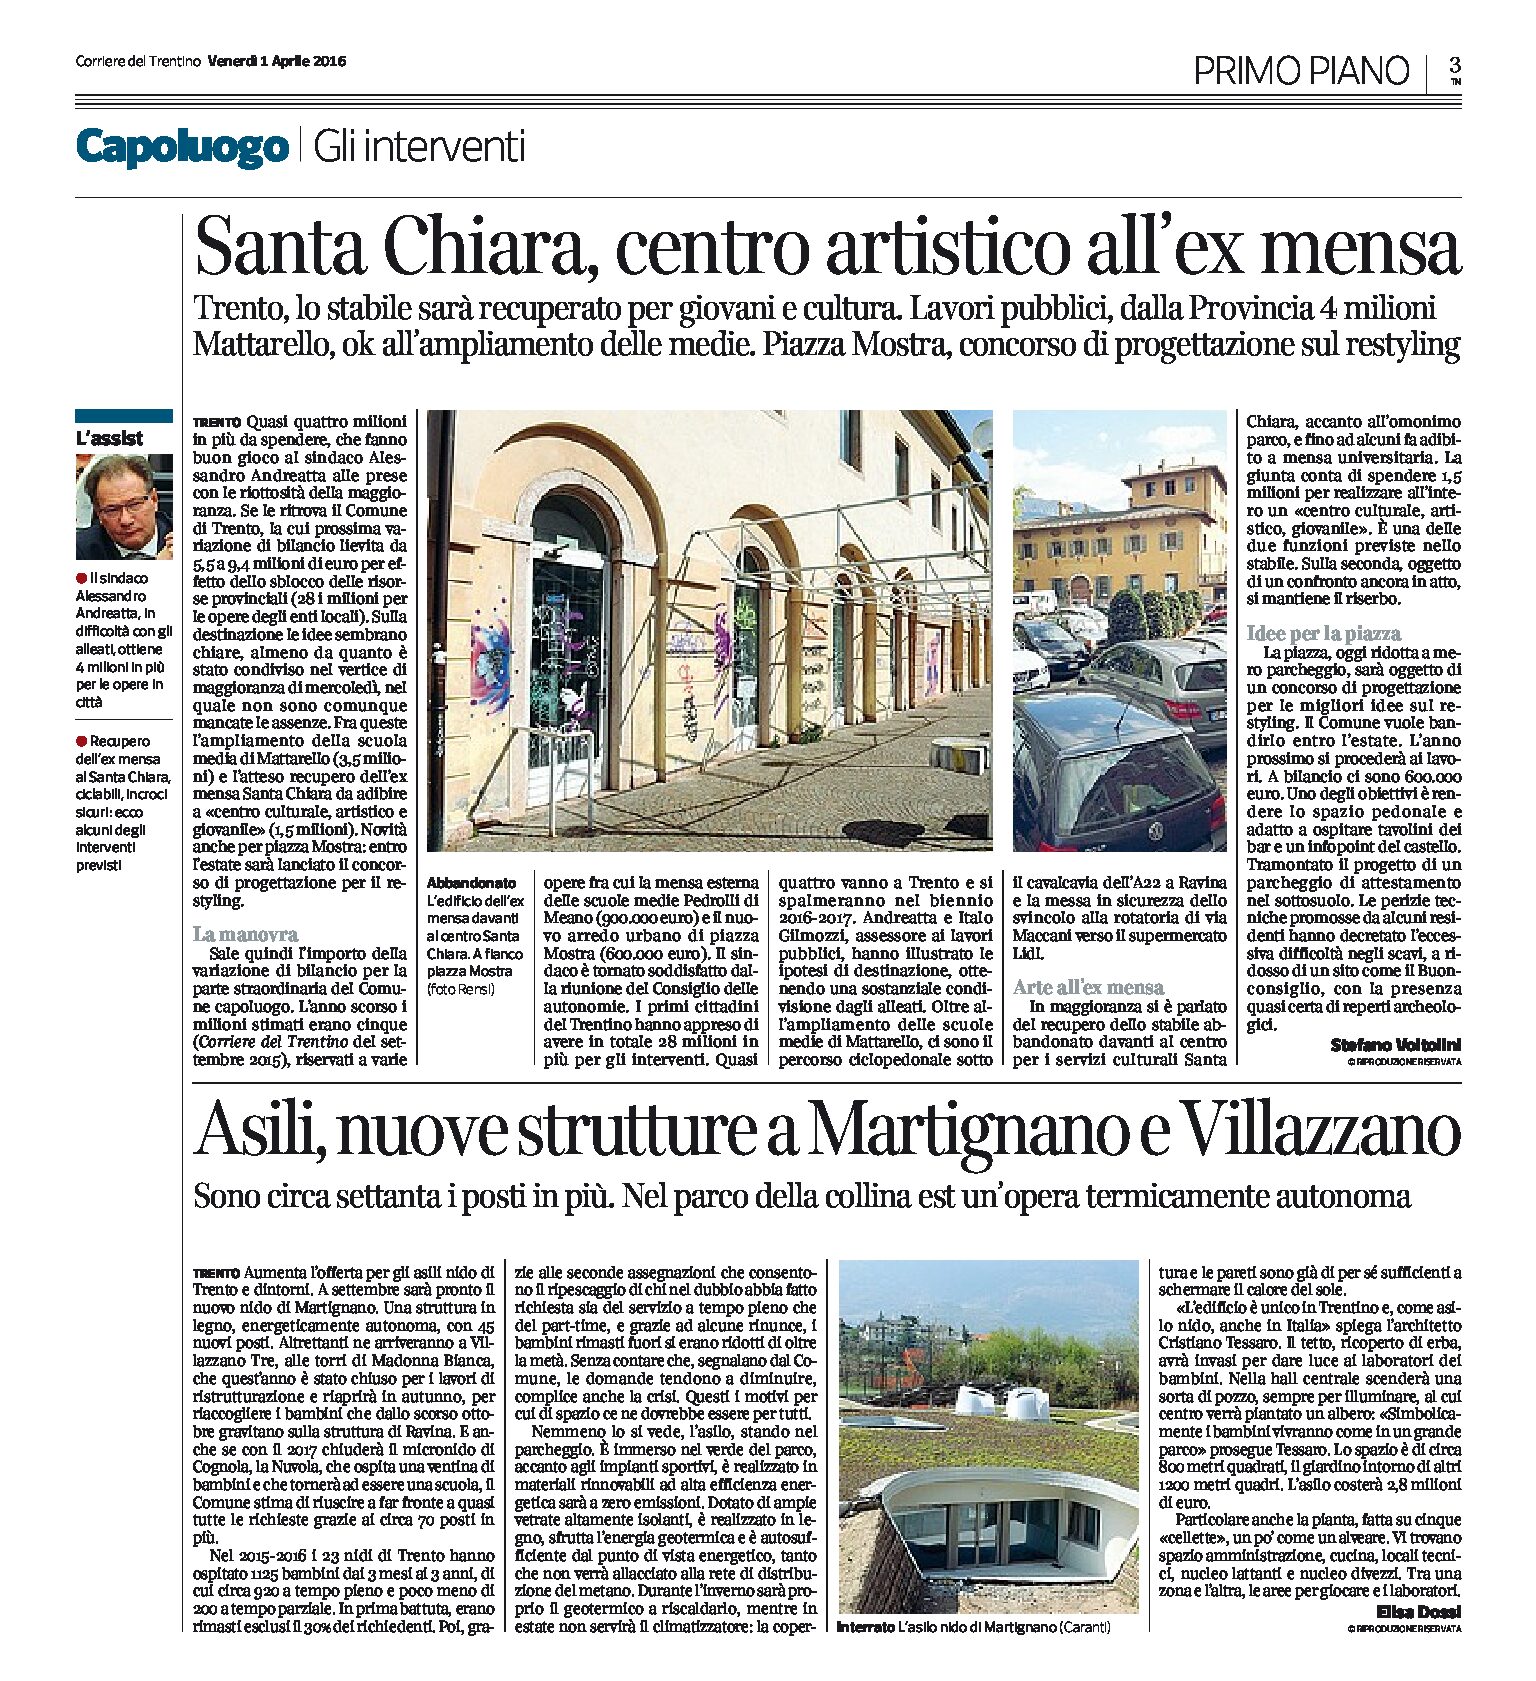 Trento: ex mensa S. Chiara centro artistico, concorso per Piazza Fiera, nuovo asilo a Martignano e a Villazzano